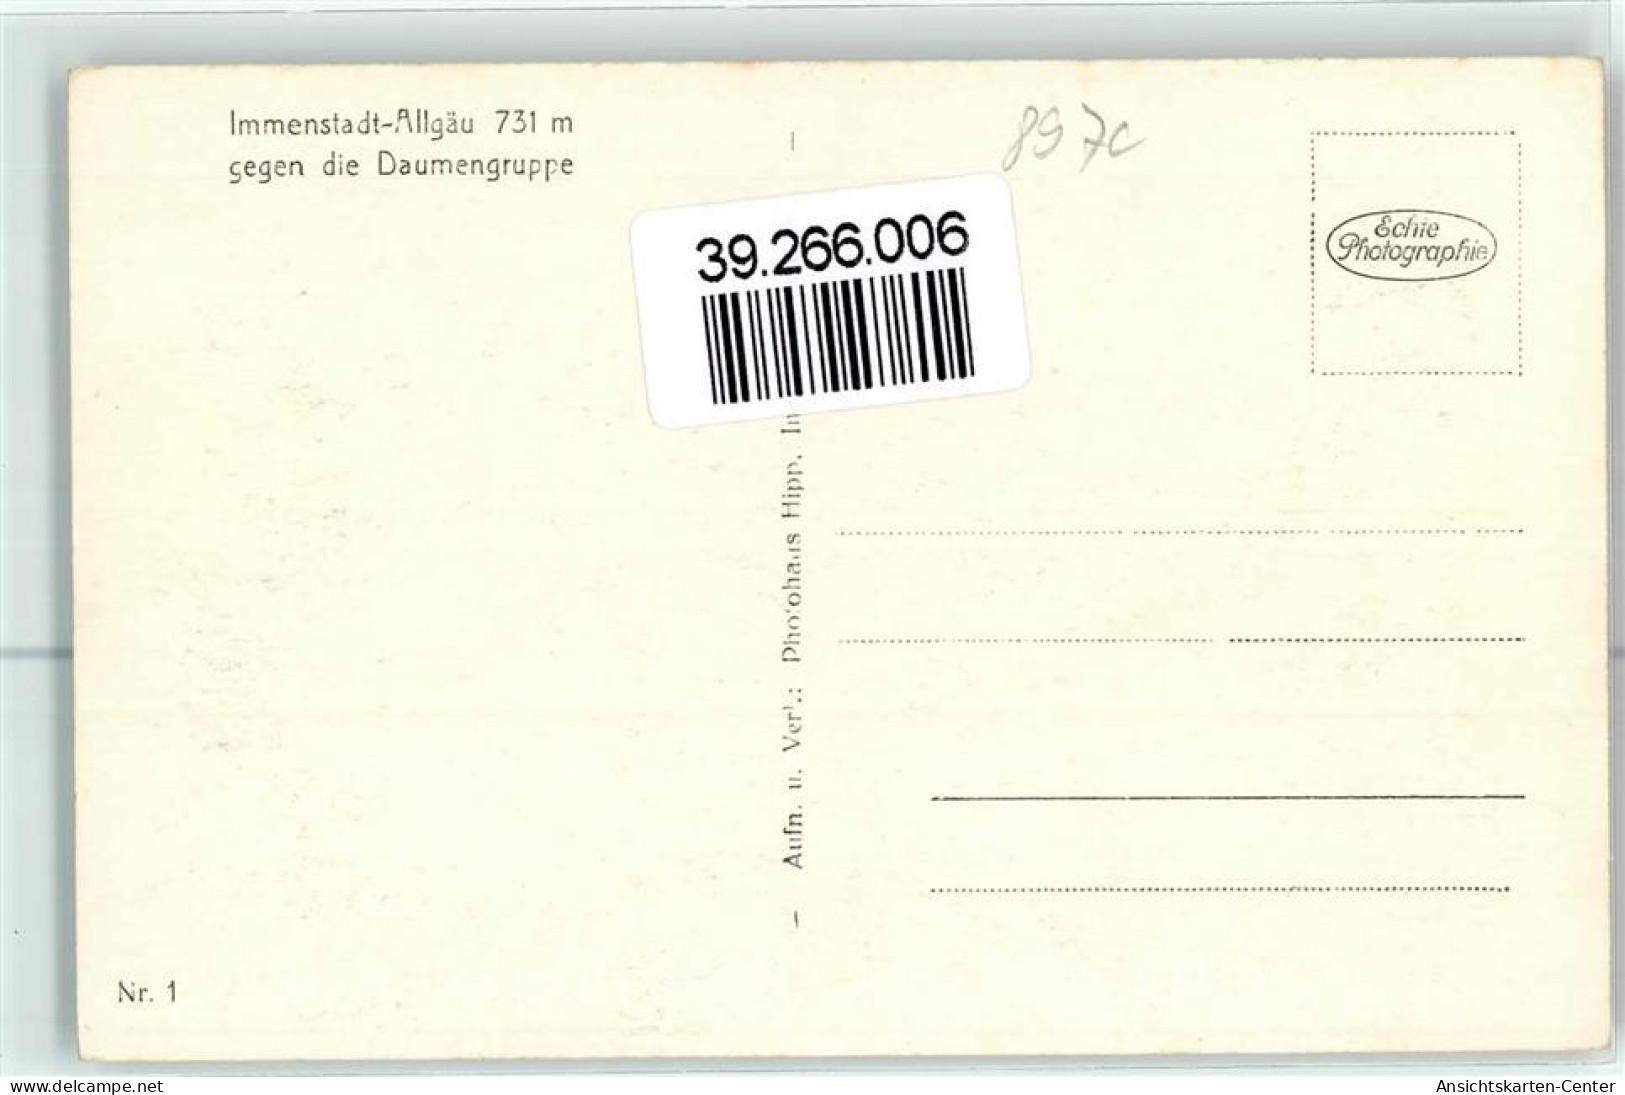 39266006 - Immenstadt I. Allgaeu - Immenstadt